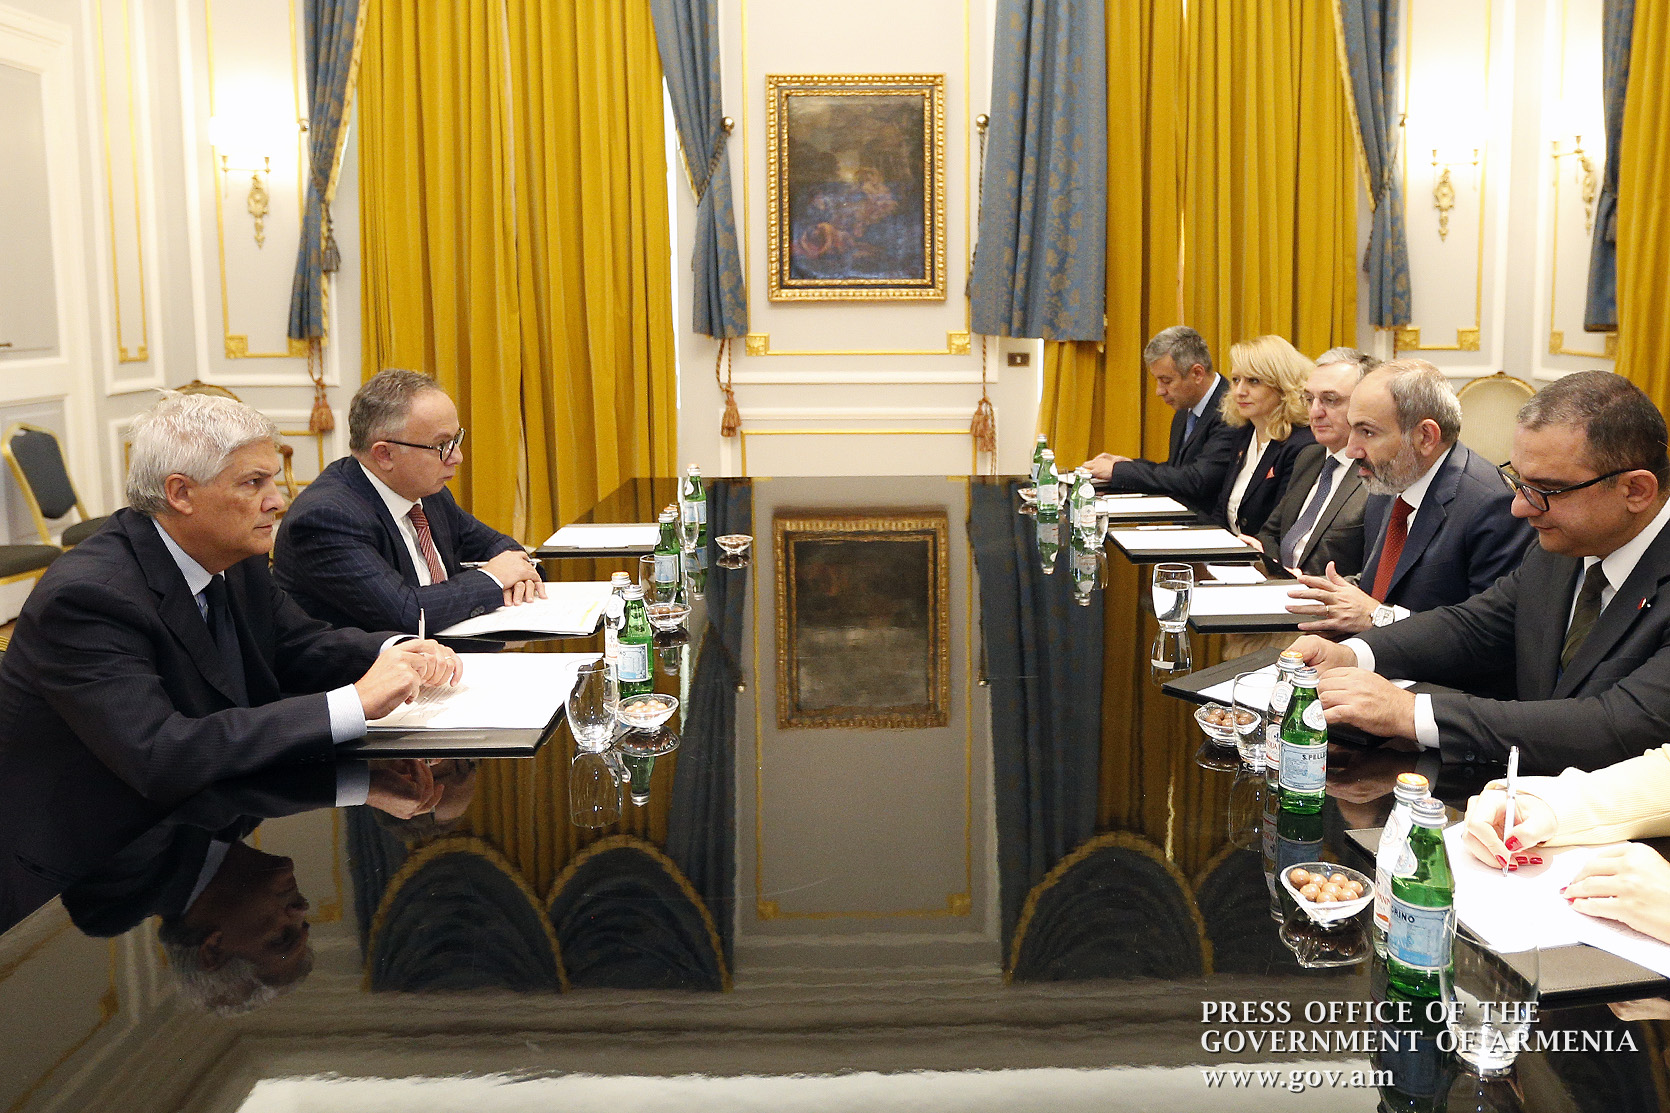 Итальянская сторона заинтересована в развитии делового сотрудничества с Арменией